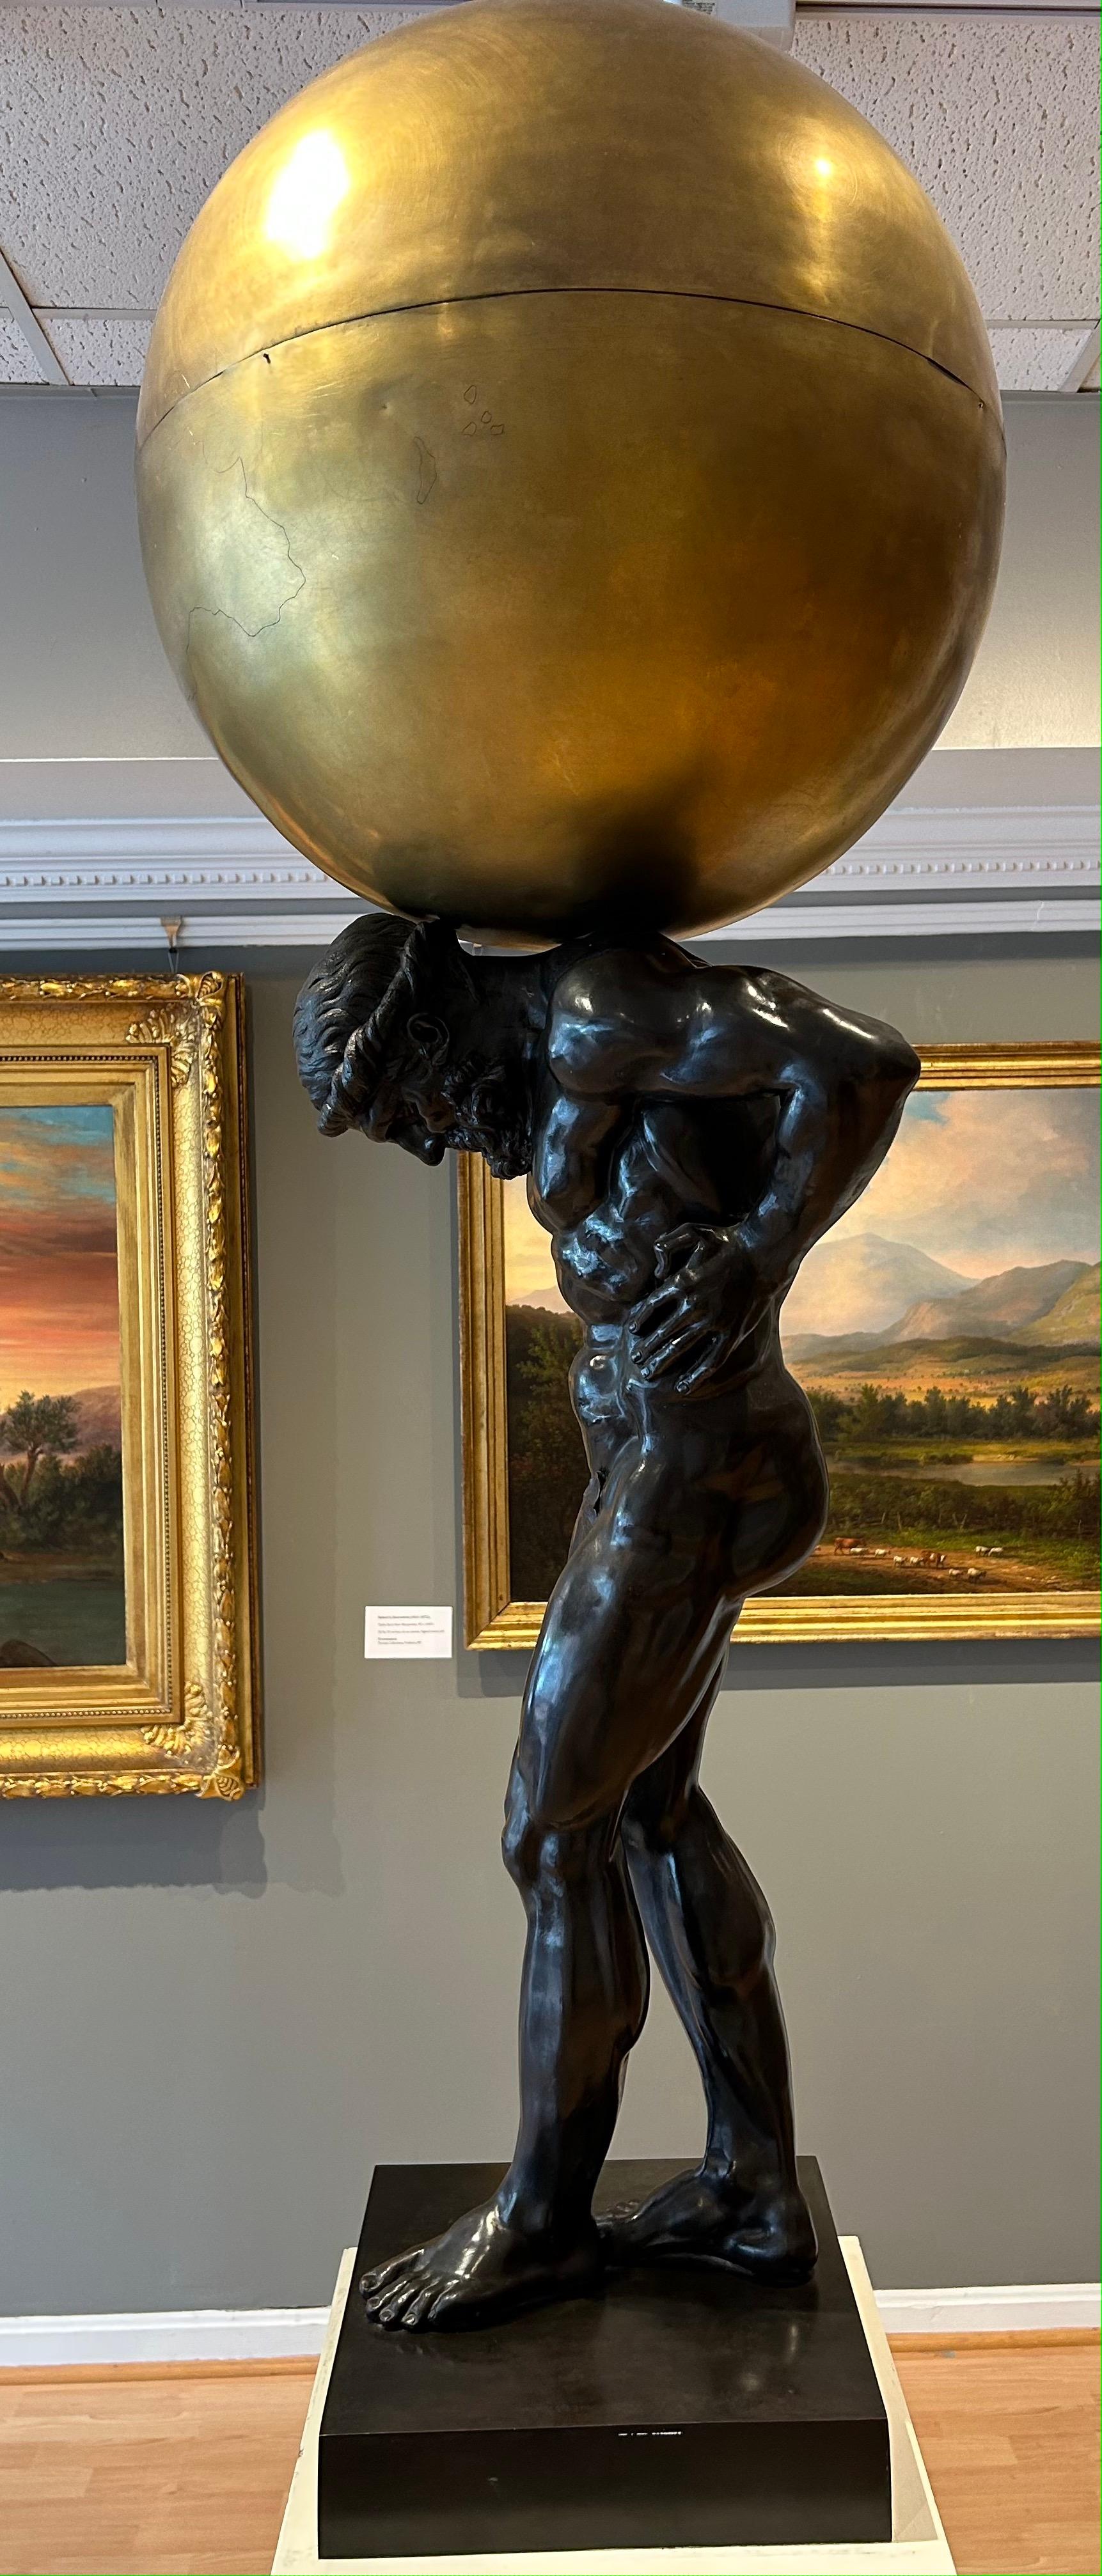 Paire de sculptures Atlas en bronze de la fin du XIXe siècle avec globe et sphère armillaire - Or Figurative Sculpture par Unknown